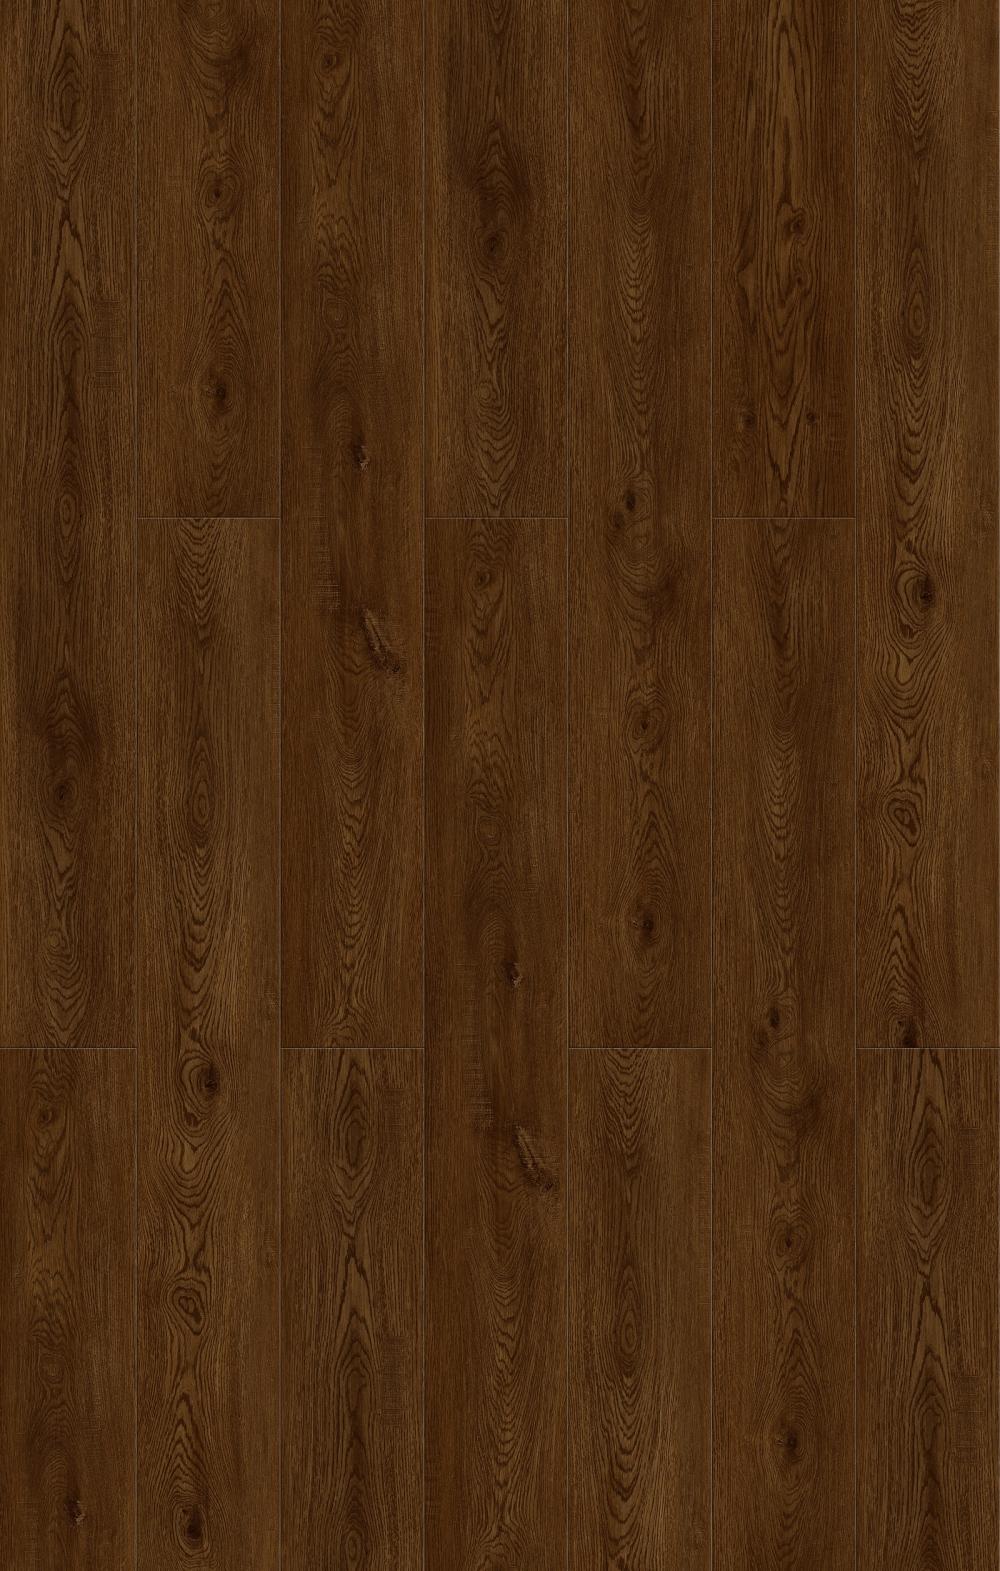 Wood Grain Unilin Click Vinyl Floor Pvc